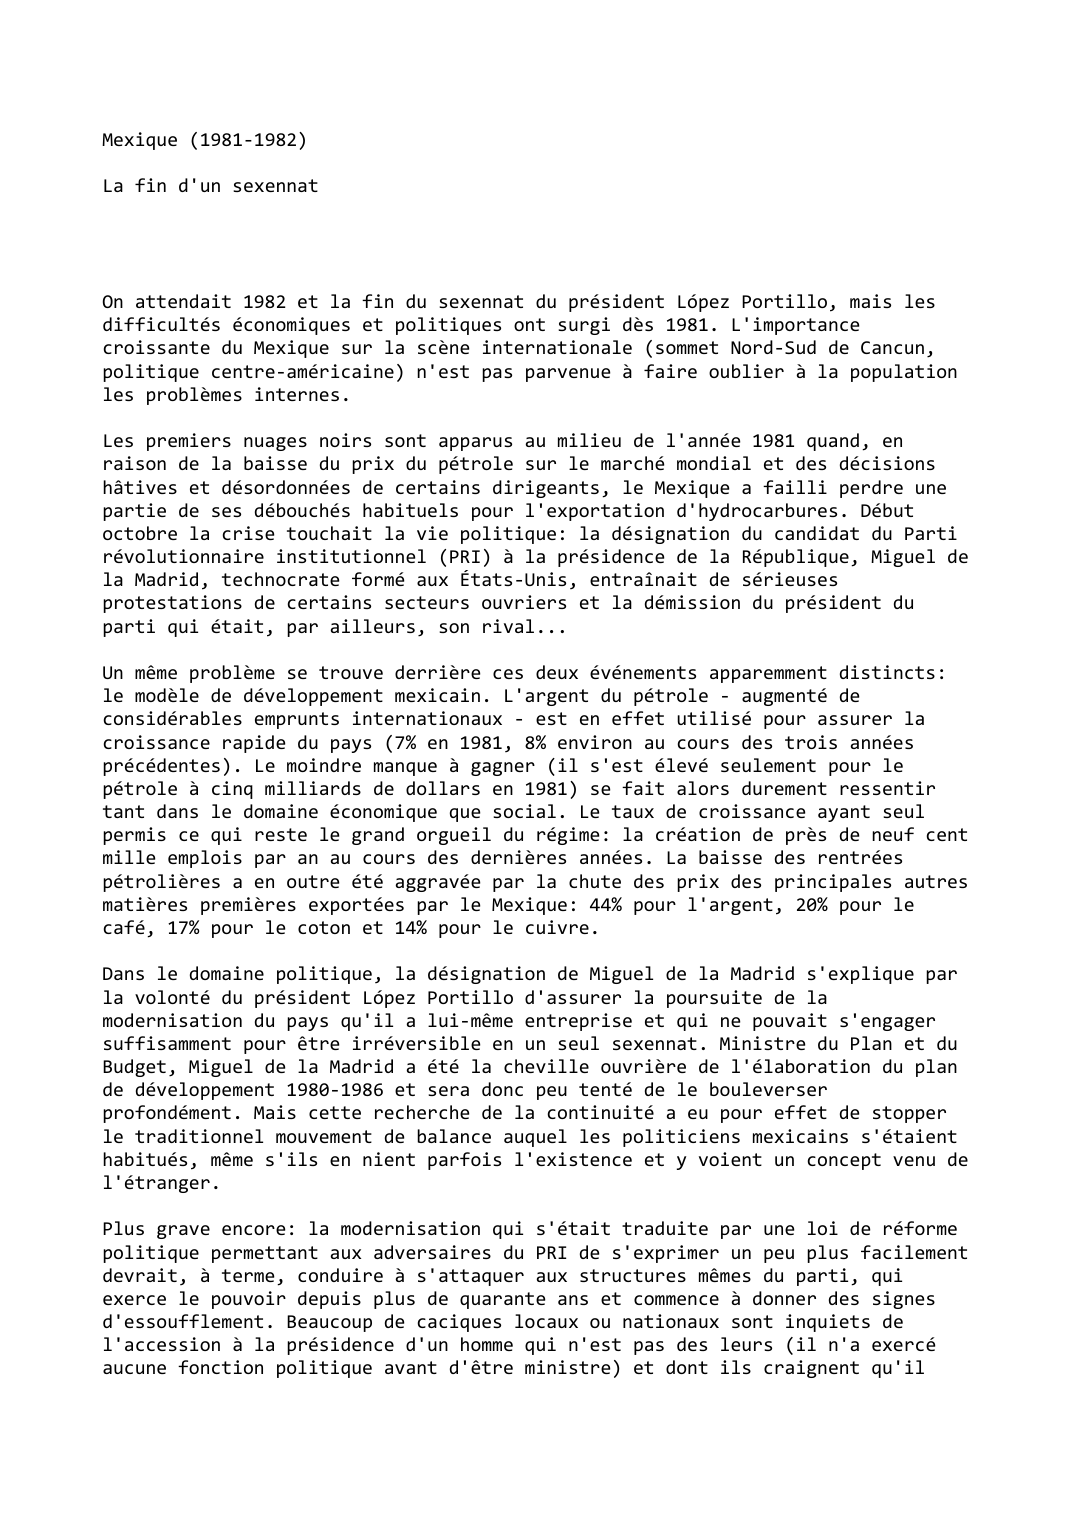 Prévisualisation du document Mexique (1981-1982)

La fin d'un sexennat